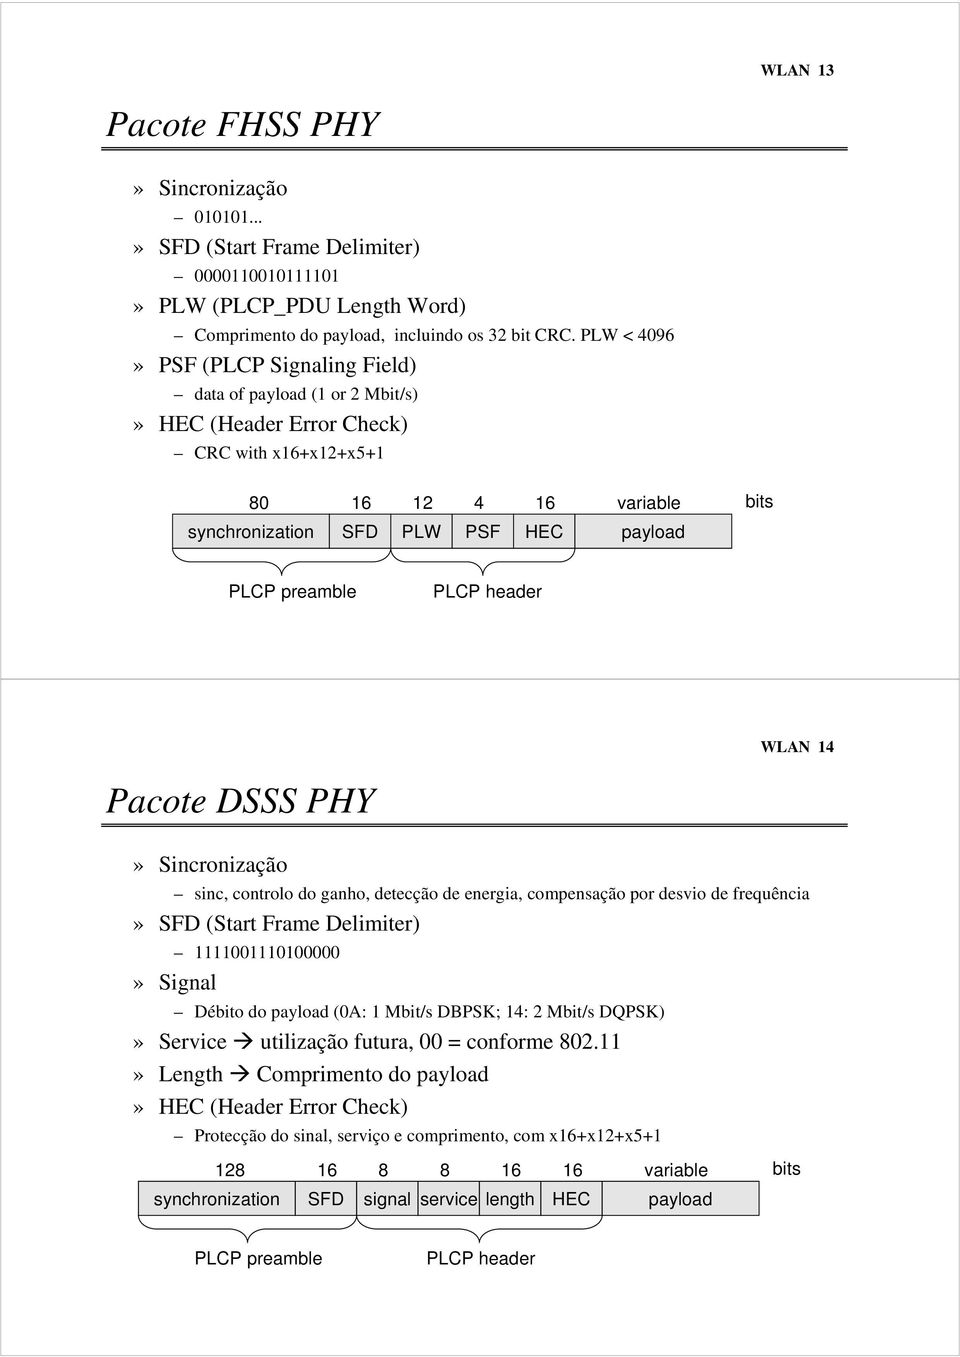 preamble PLCP header WLAN 14 Pacote DSSS PHY» Sincronização sinc, controlo do ganho, detecção de energia, compensação por desvio de frequência» SFD (Start Frame Delimiter) 1111001110100000» Signal